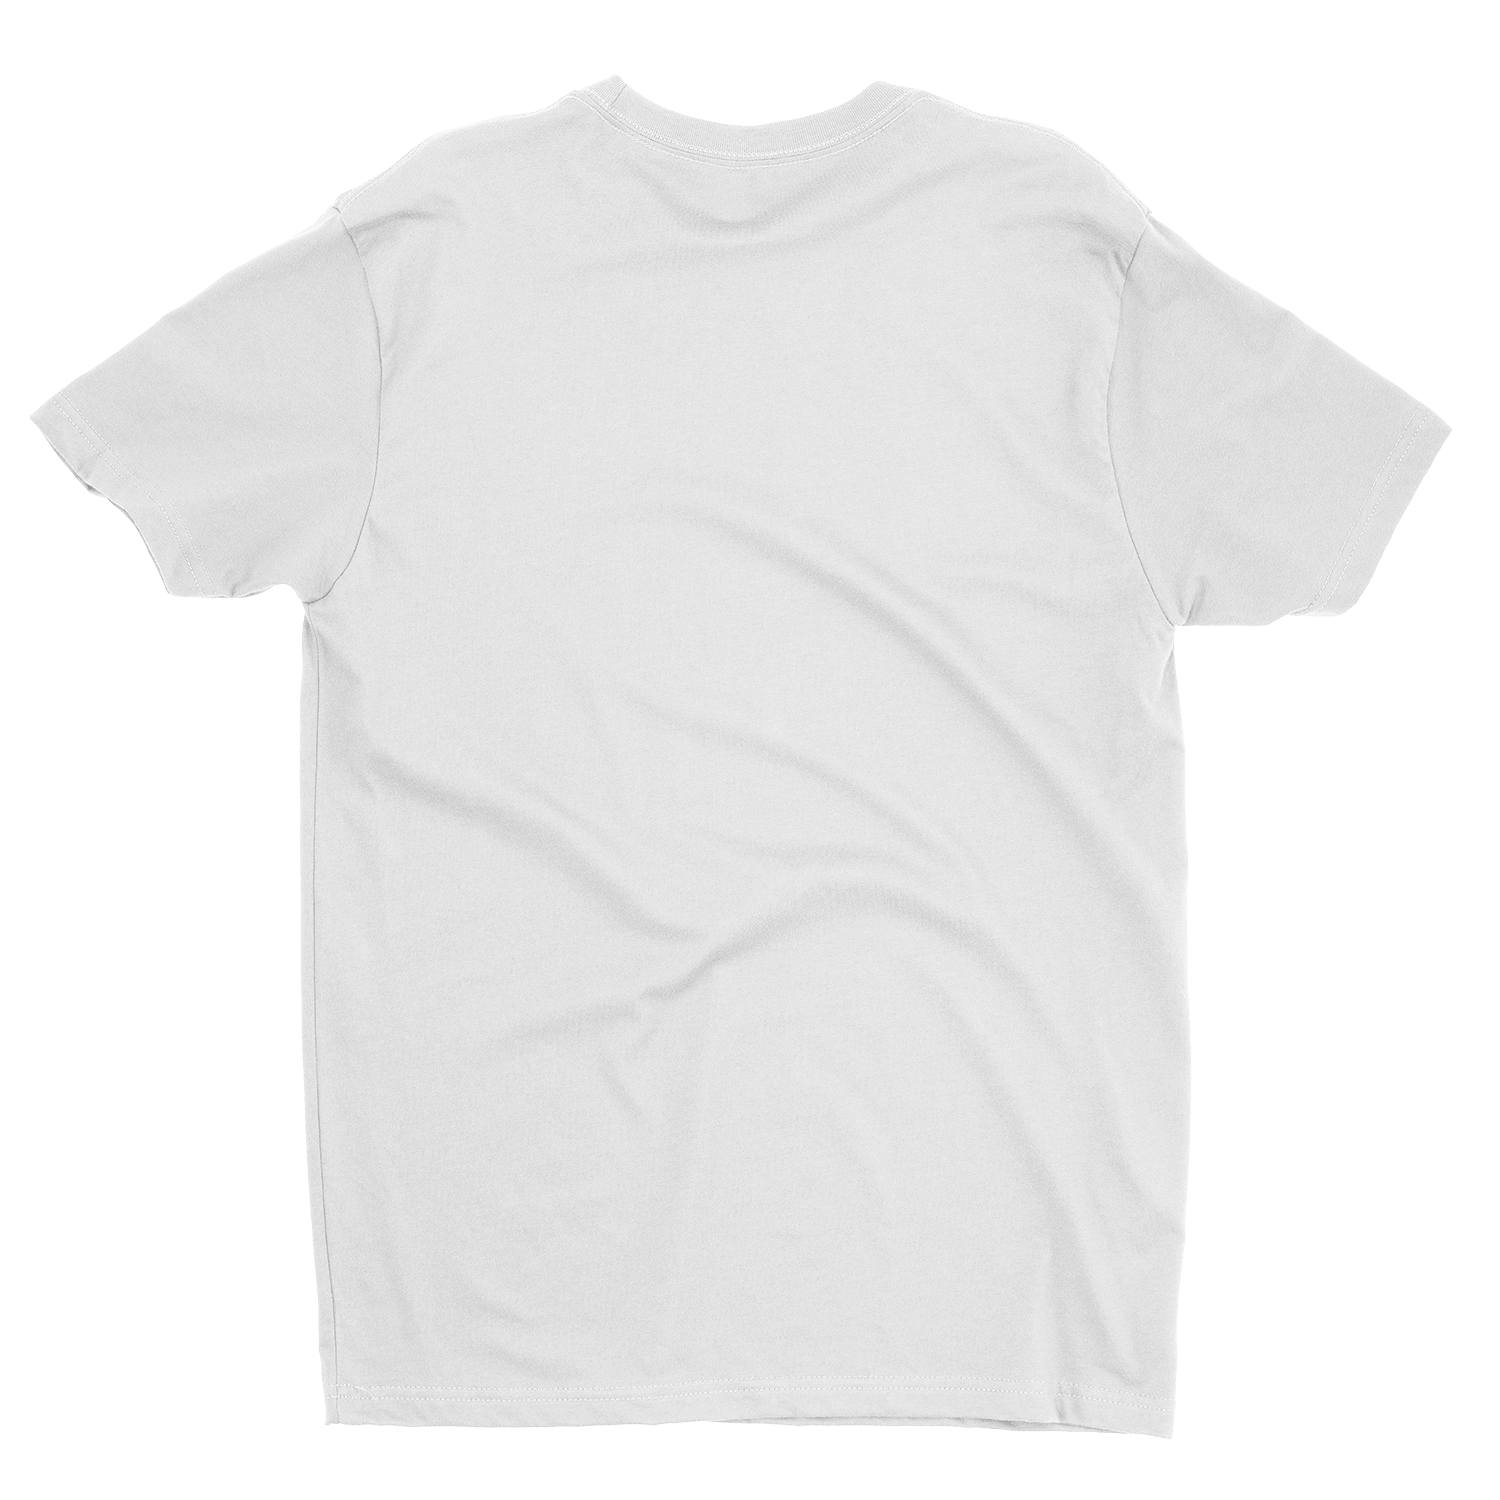 Download Free T Shirt Mockup Generator Photific